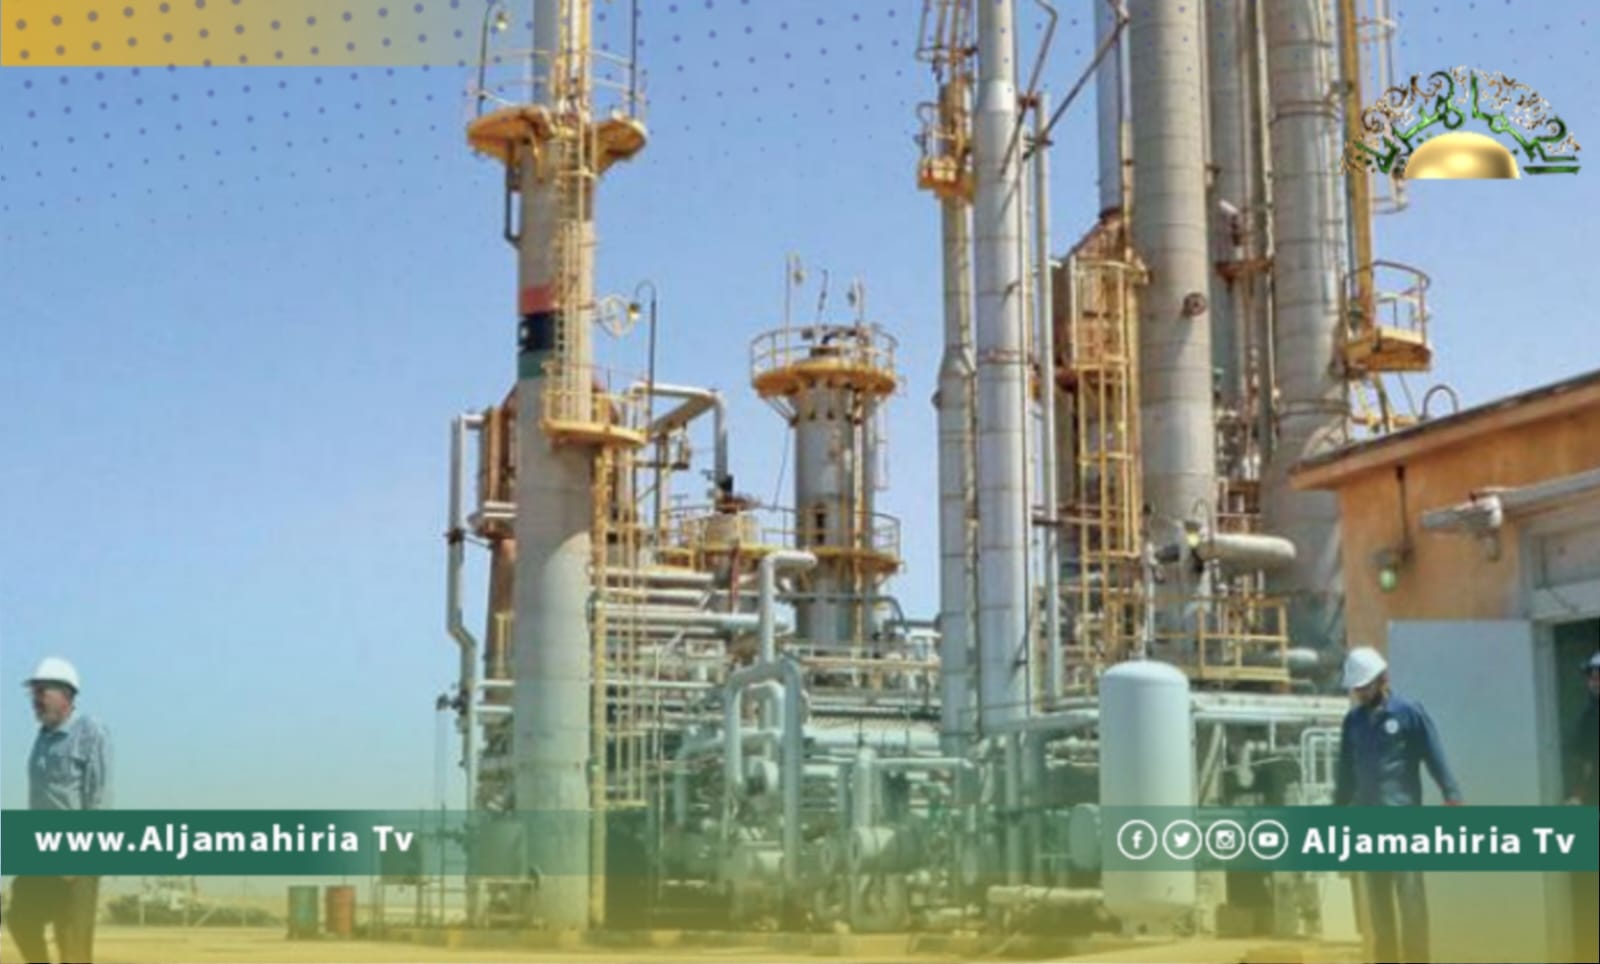 رغم فشل الحكومة في صرف مرتبات الموظفين.. ليبيا تتصدر قائمة منتجي النفط الأفارقة